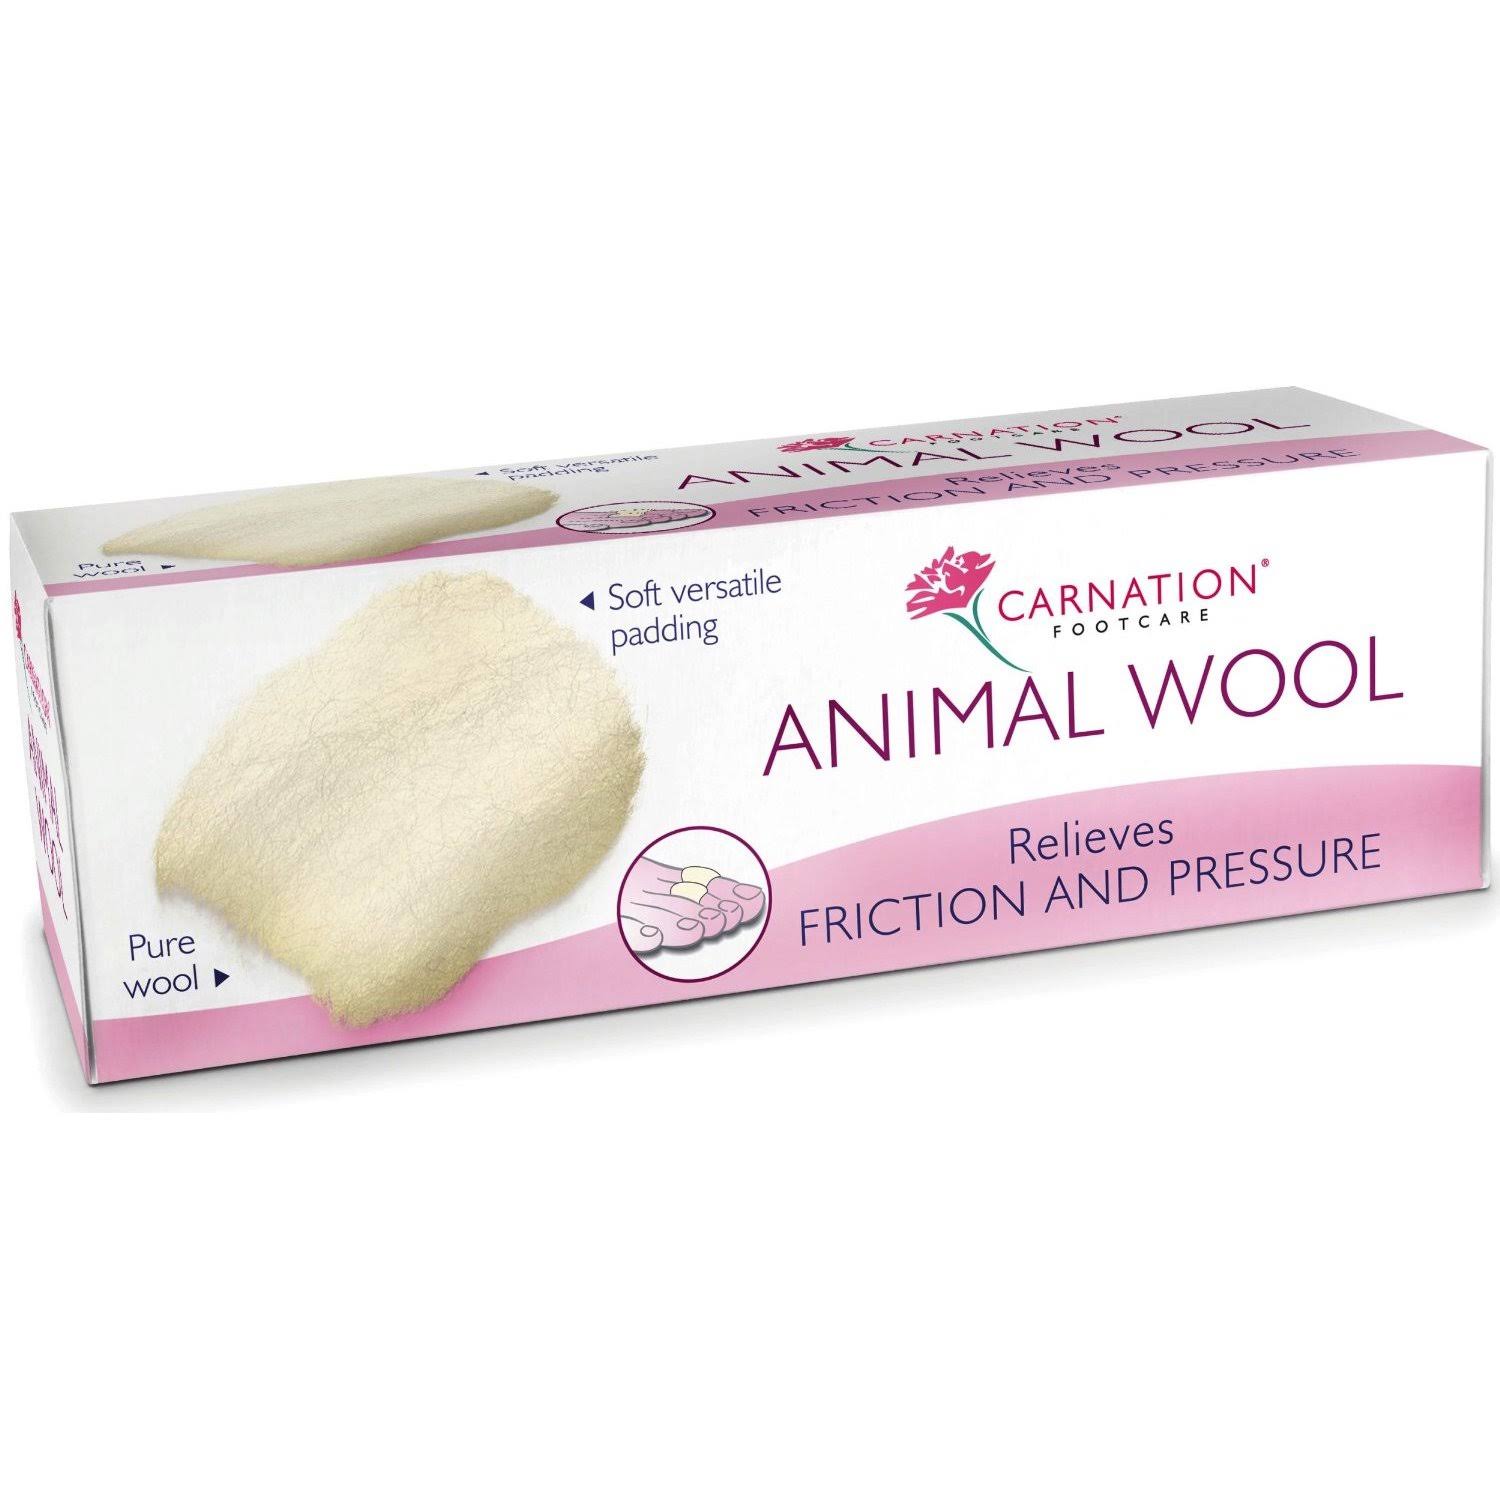 Carnation Animal Wool